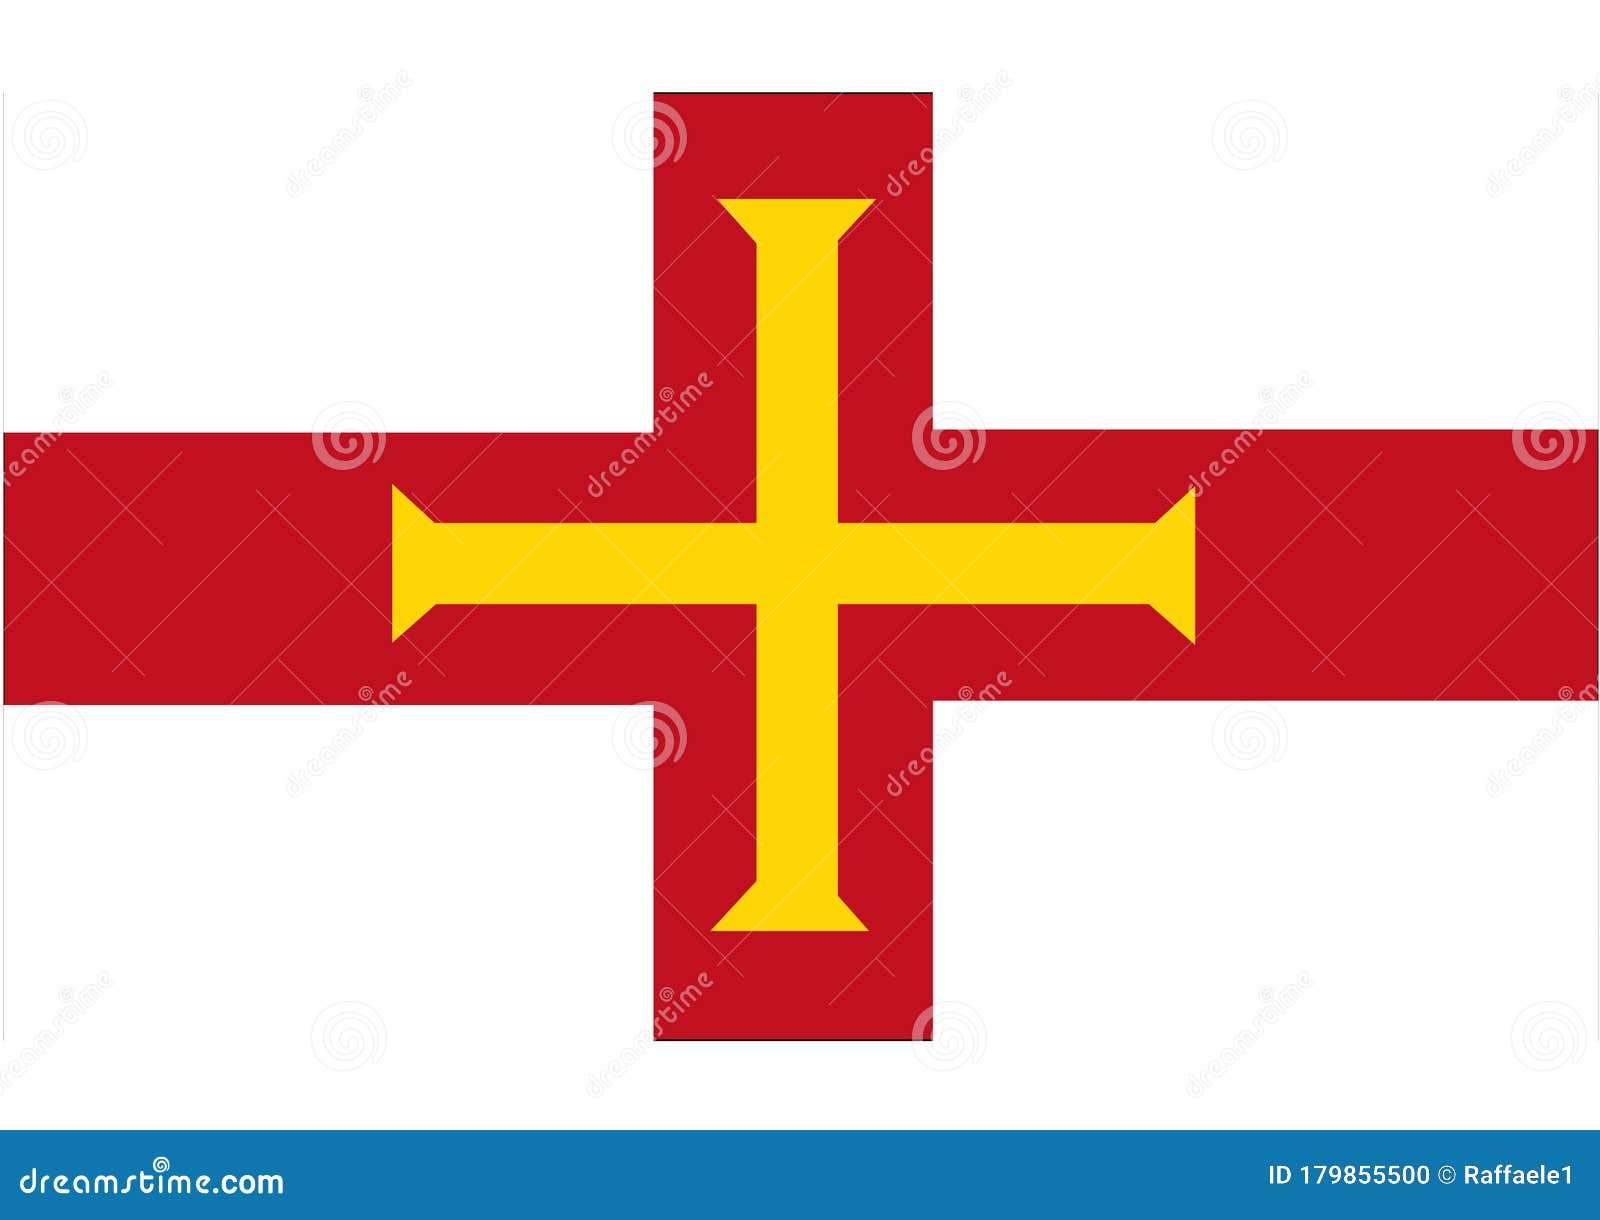 Guernsey flag: Là lá cờ biểu tượng cho Guernsey, quần đảo hiền hòa và yên tĩnh. Màu xanh trên lá cờ này thể hiện lòng nhiệt thành của cư dân đối với môi trường sống xanh và màu vàng thể hiện sự quyết tâm trong những công việc đòi hỏi tính chính xác và kỹ năng. Hãy cùng chiêm ngưỡng bức ảnh tràn đầy ý nghĩa này.